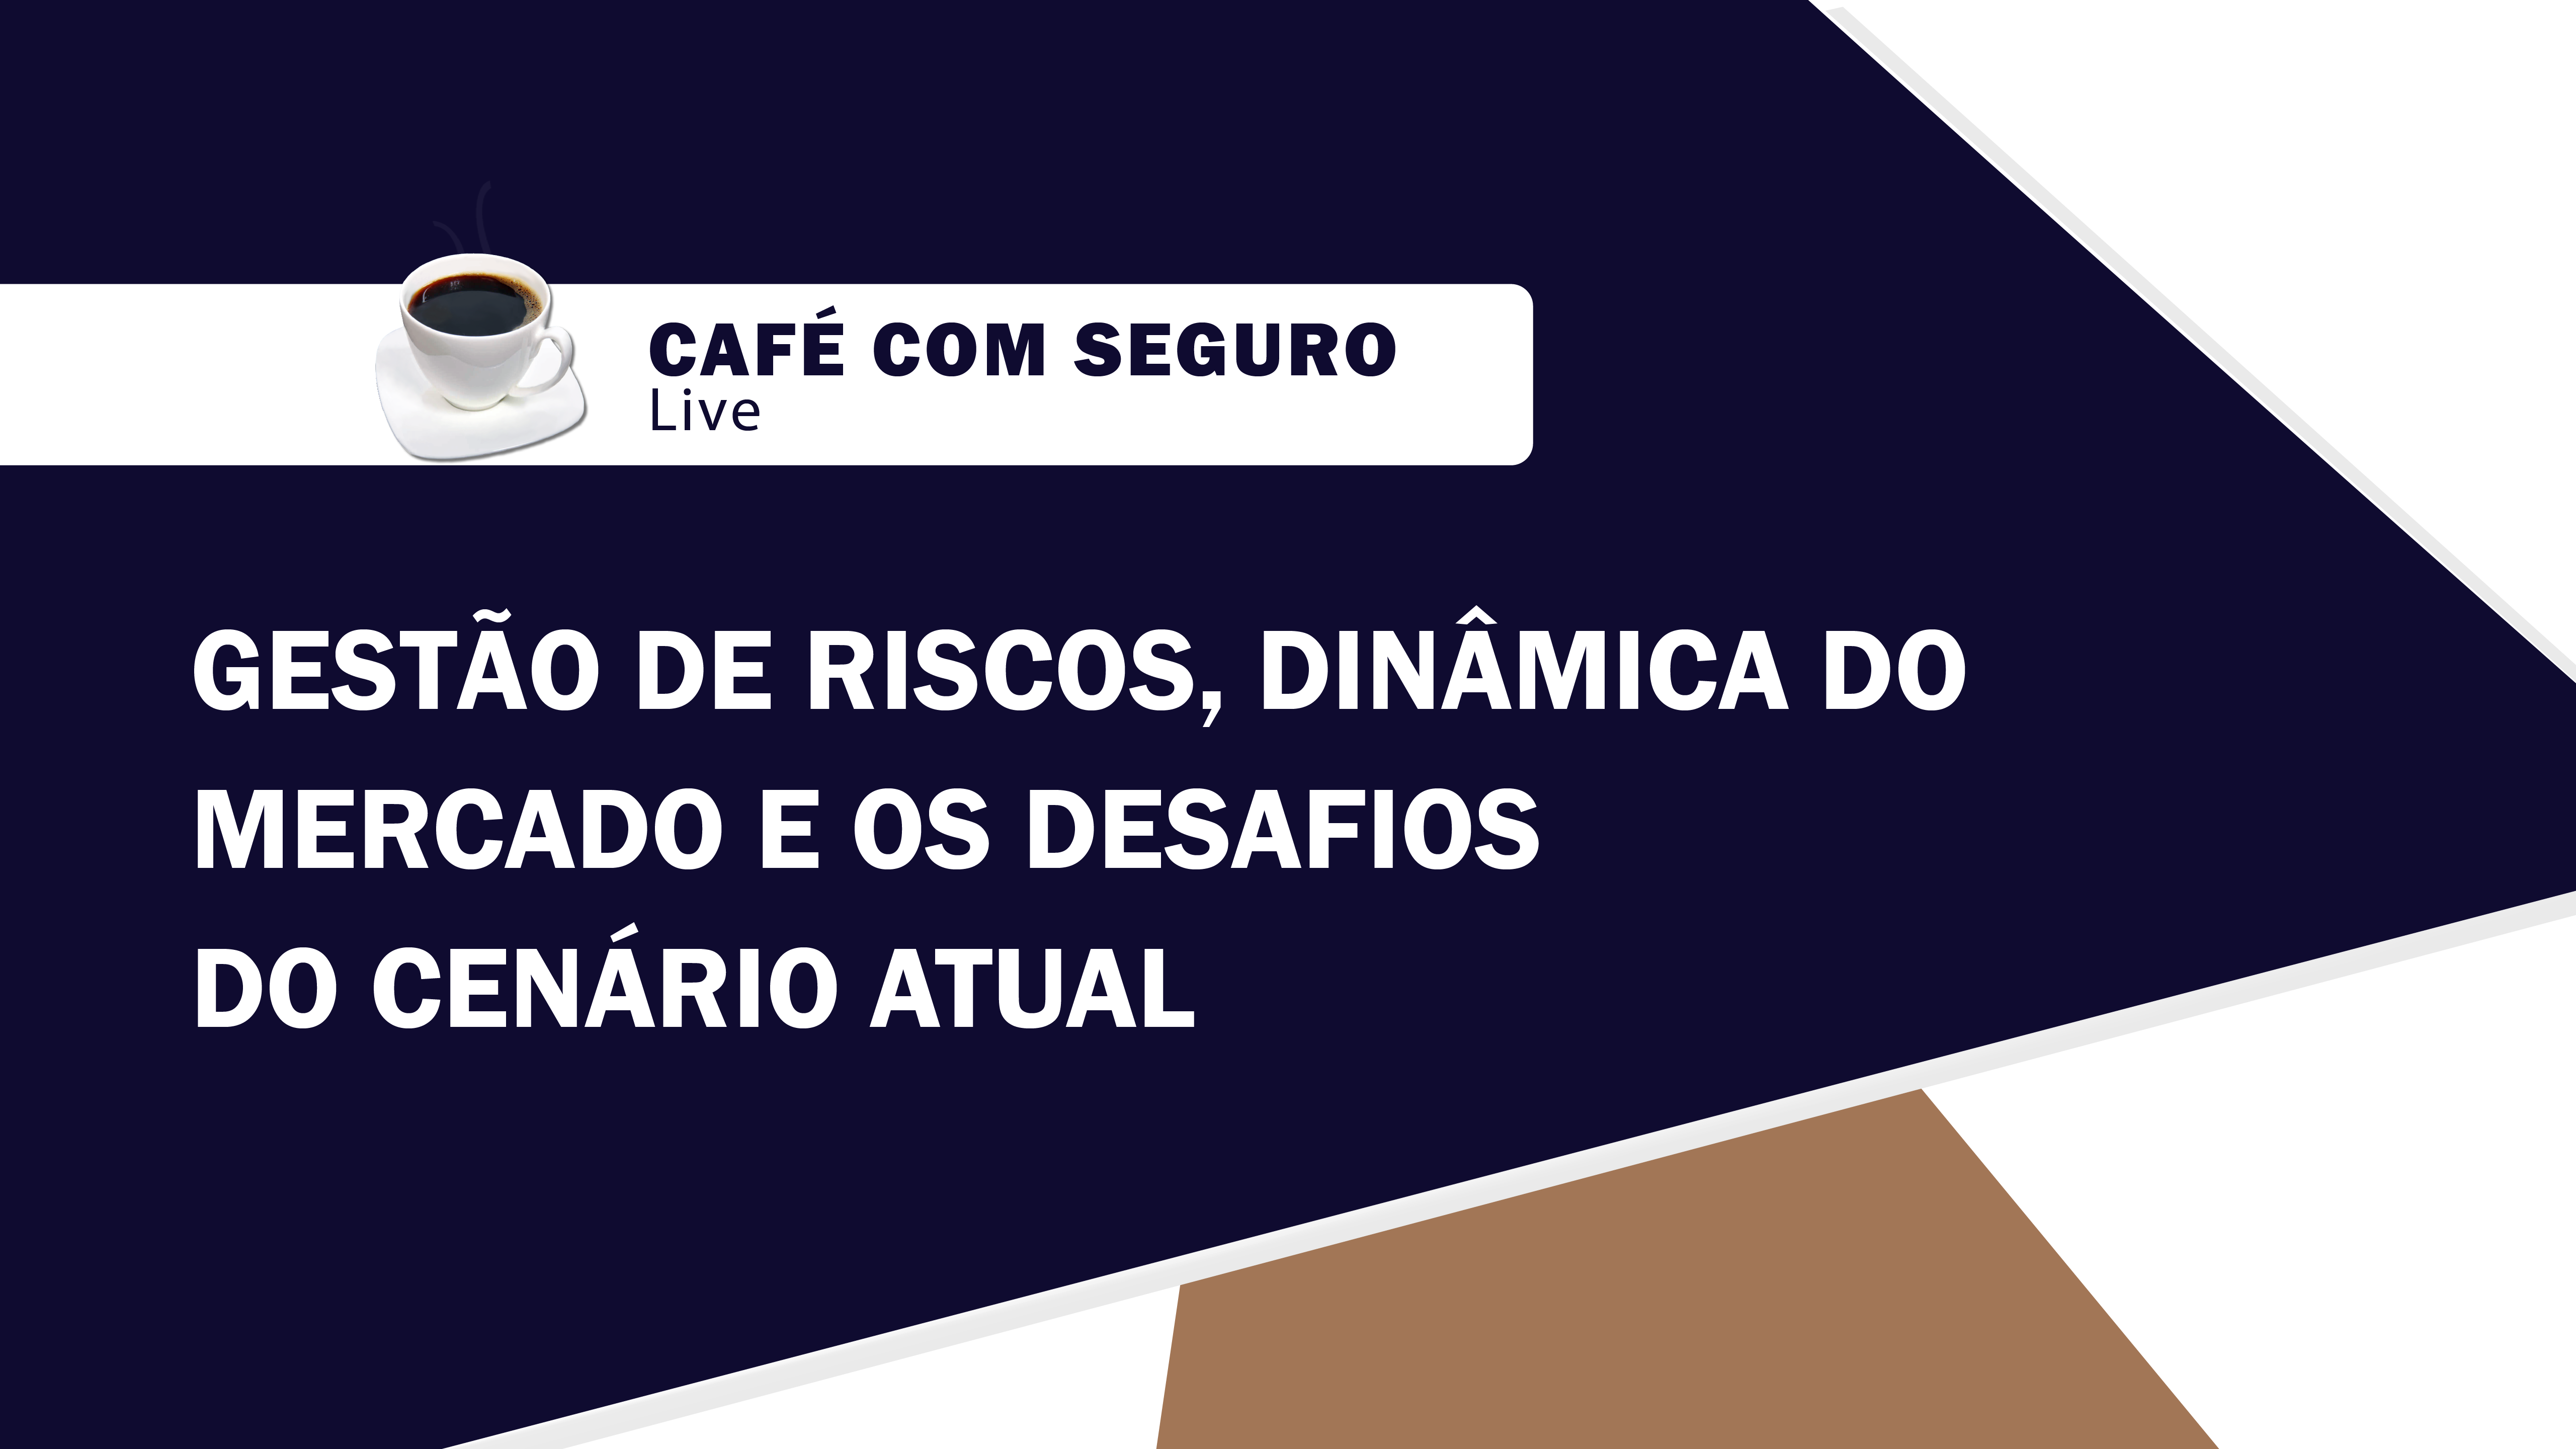 Café com Seguro Live l Gestão de Riscos, dinâmica do mercado e os desafios do cenário atual